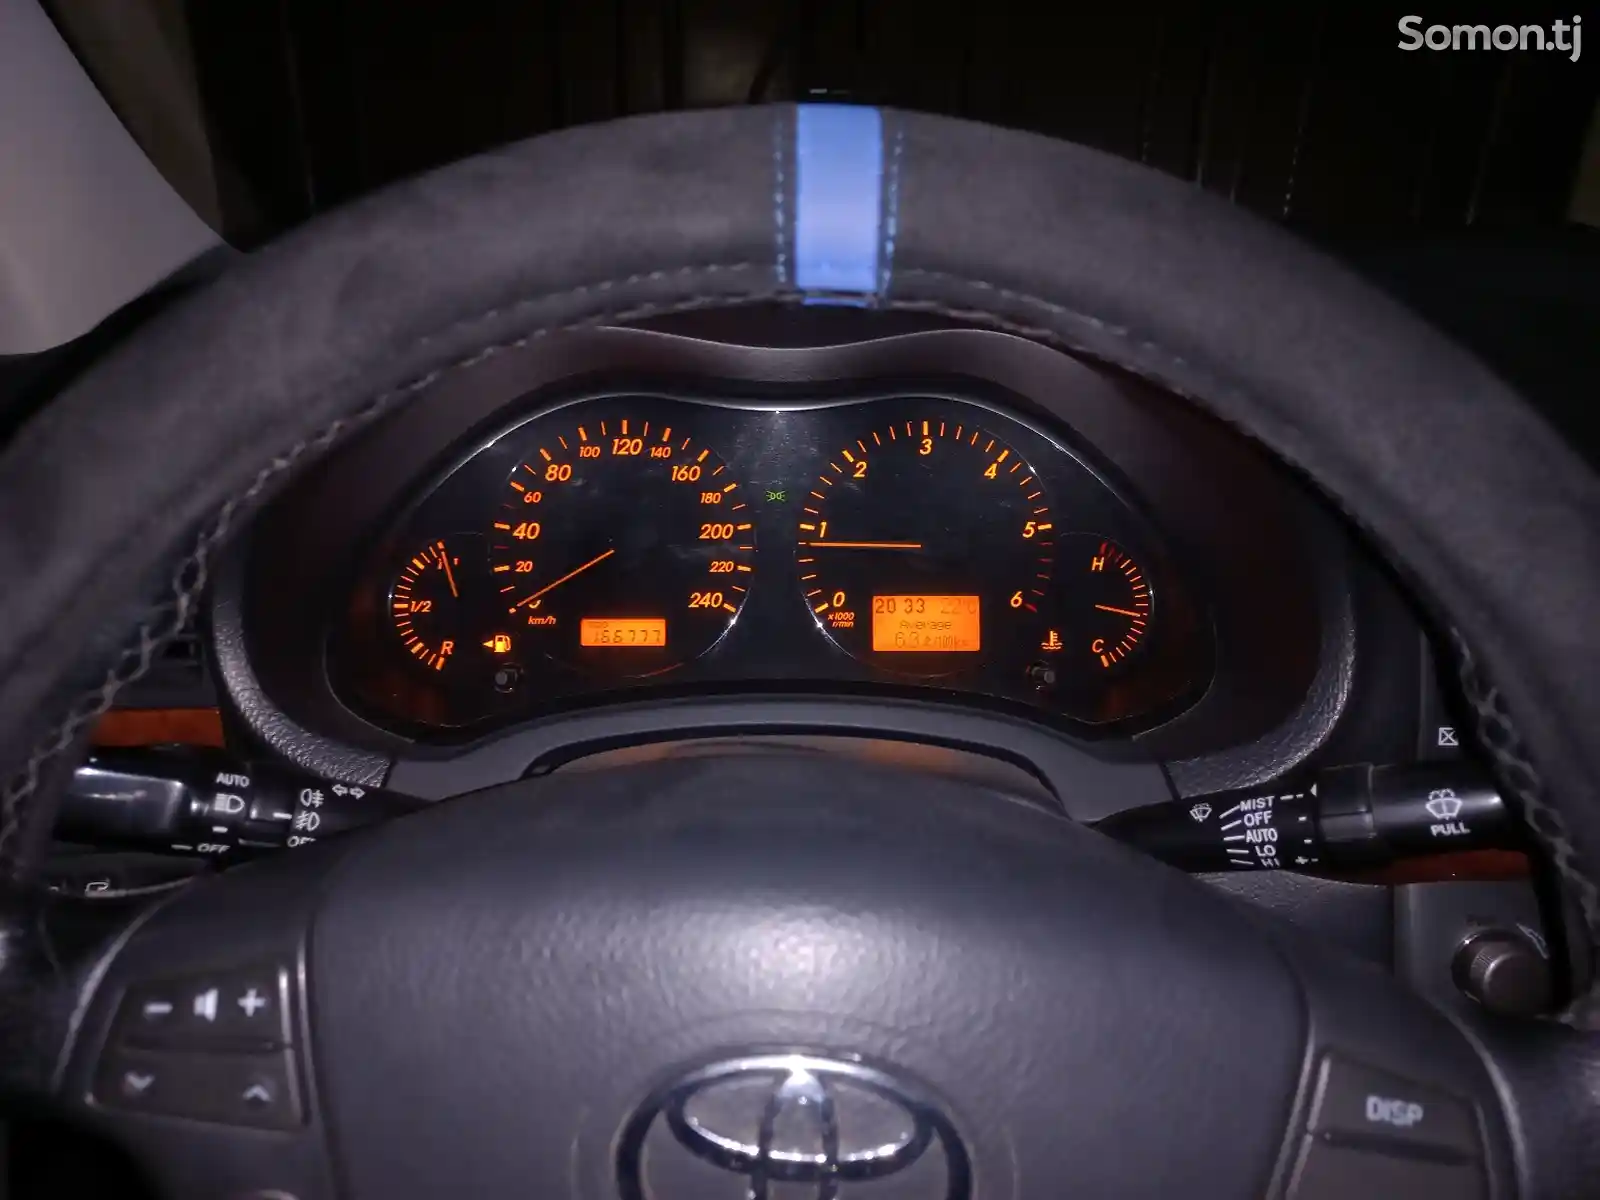 Toyota Avensis, 2007-5